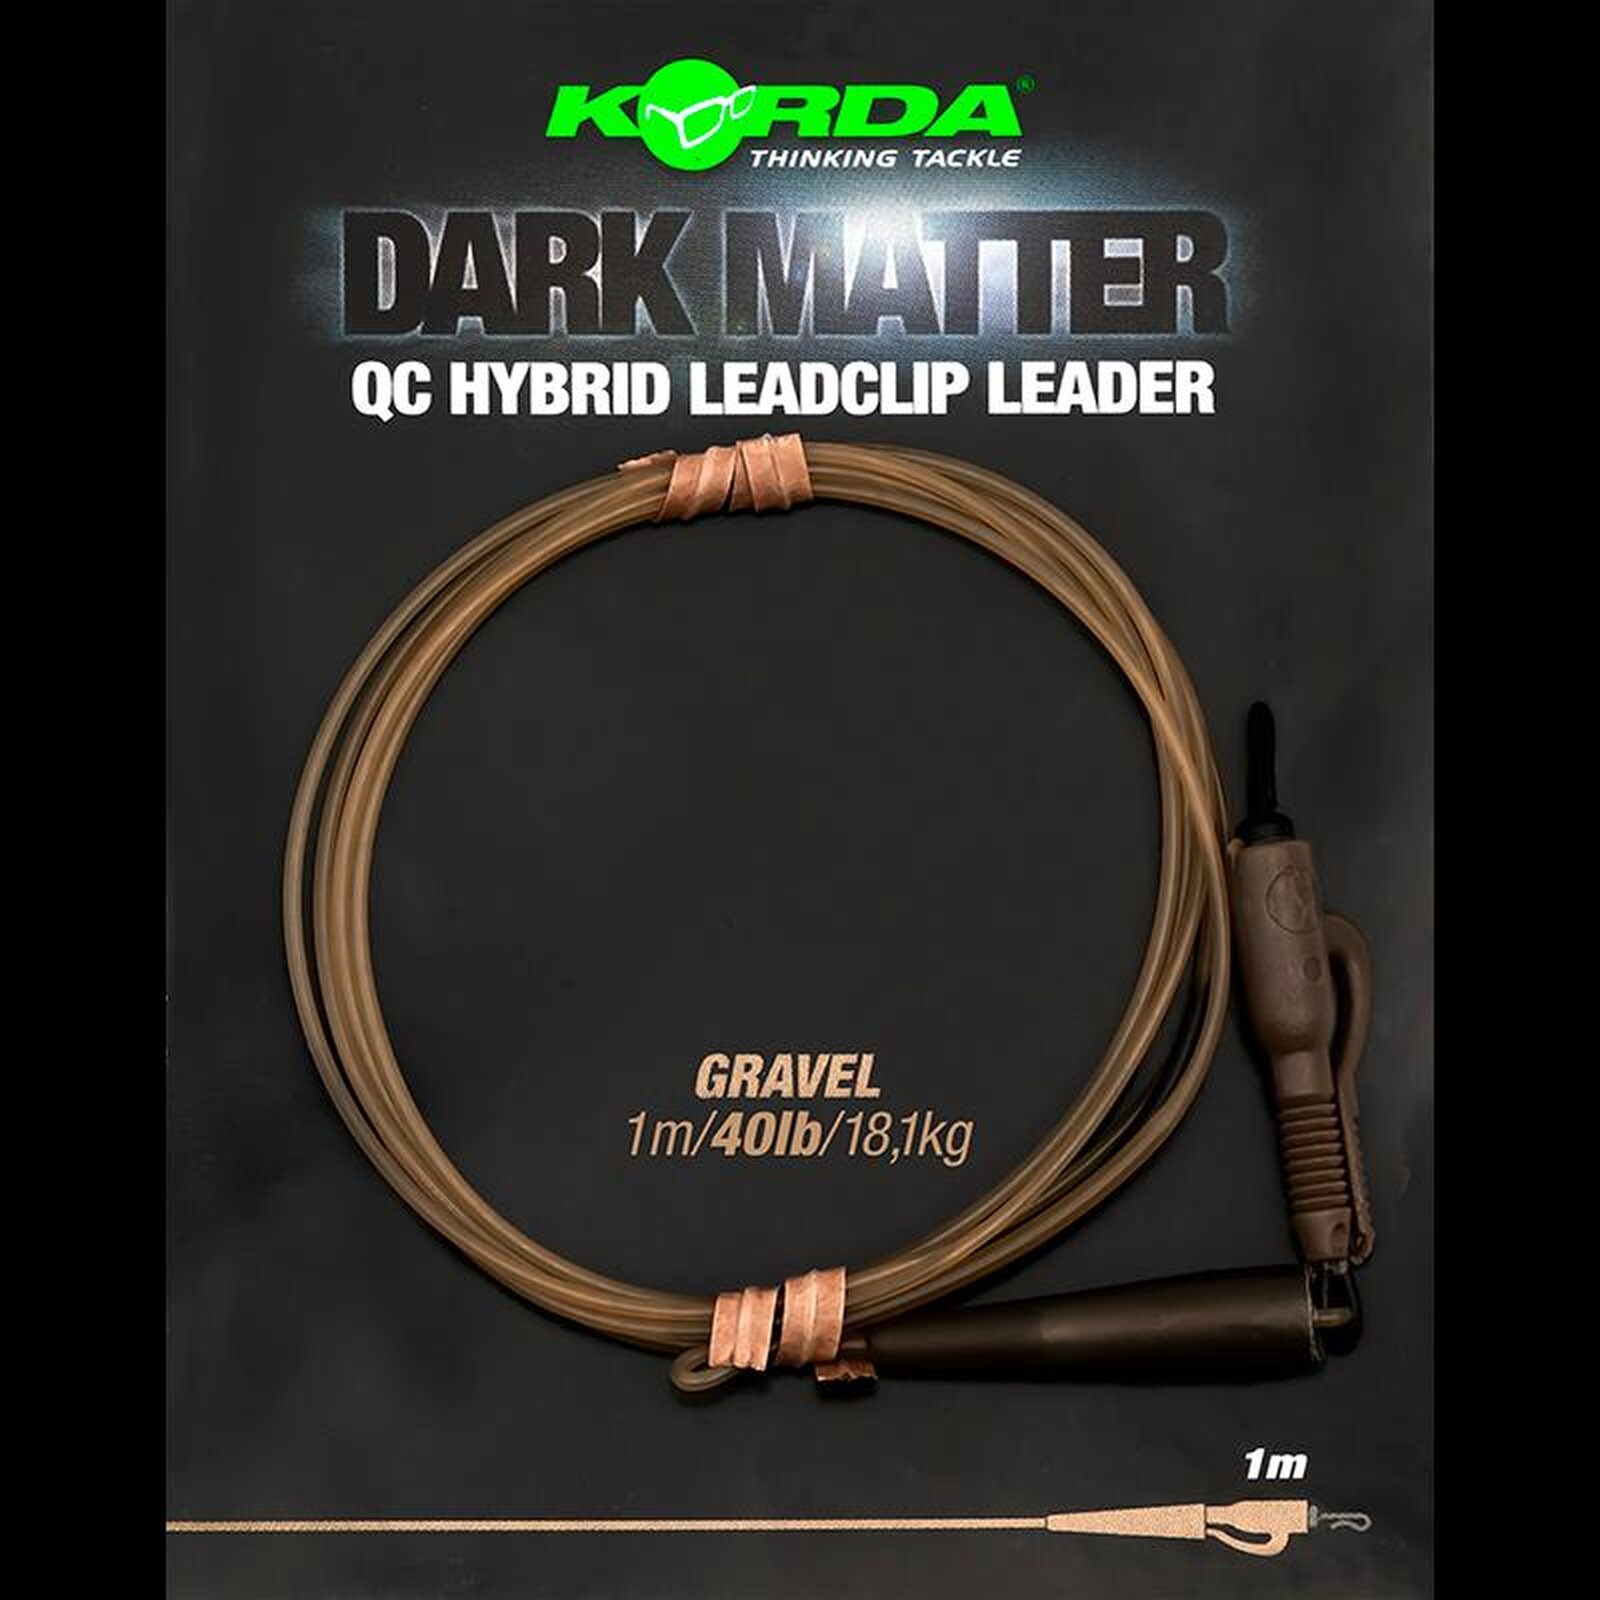 Korda Dark Matter QC Hybrid Leadclip Leader Gravel 1 Stk.